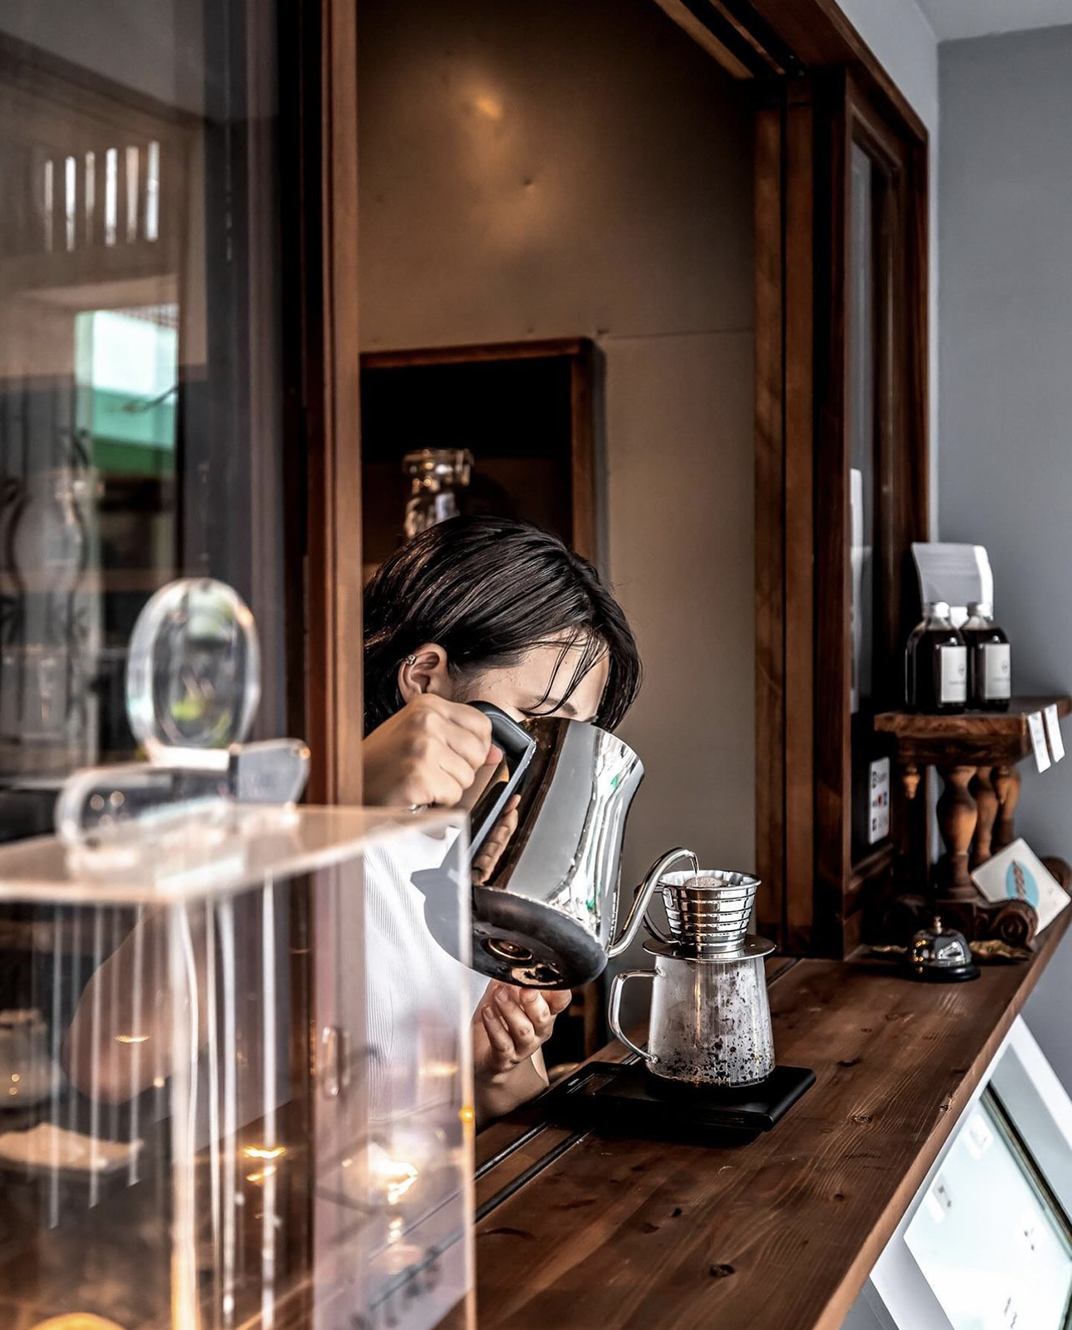 非常松弛感的咖啡店coffeestandwily 日本 深圳 上海 北京 广州 武汉 咖啡店 餐饮商业 logo设计 vi设计 空间设计